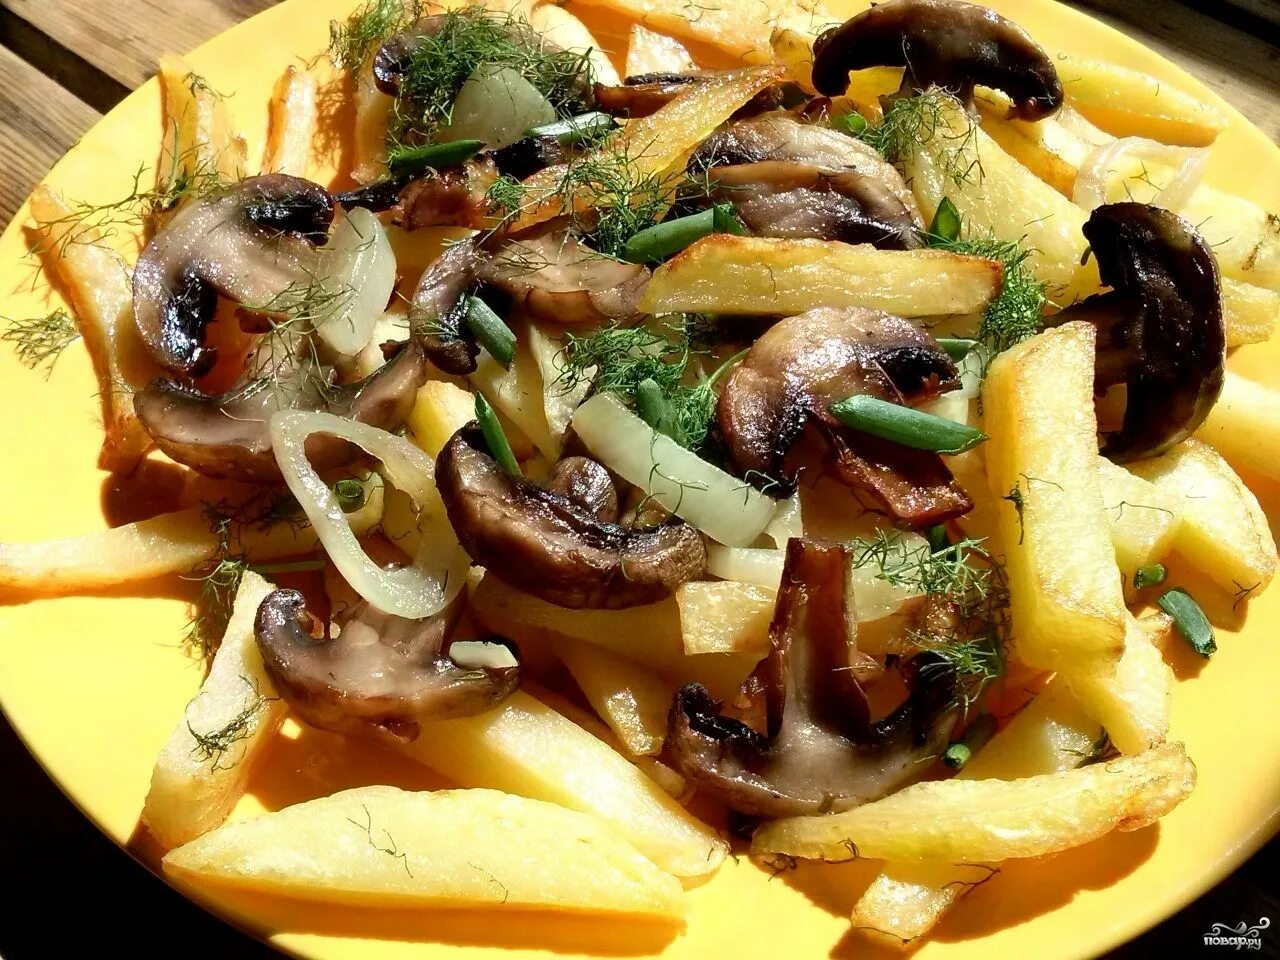 Картофель с маринованными грибами. Жареная картошка с грибами. Жареная картошка с шампиньонами. Картофель с грибами и луком. Картошка жареная с грибами шампиньонами.